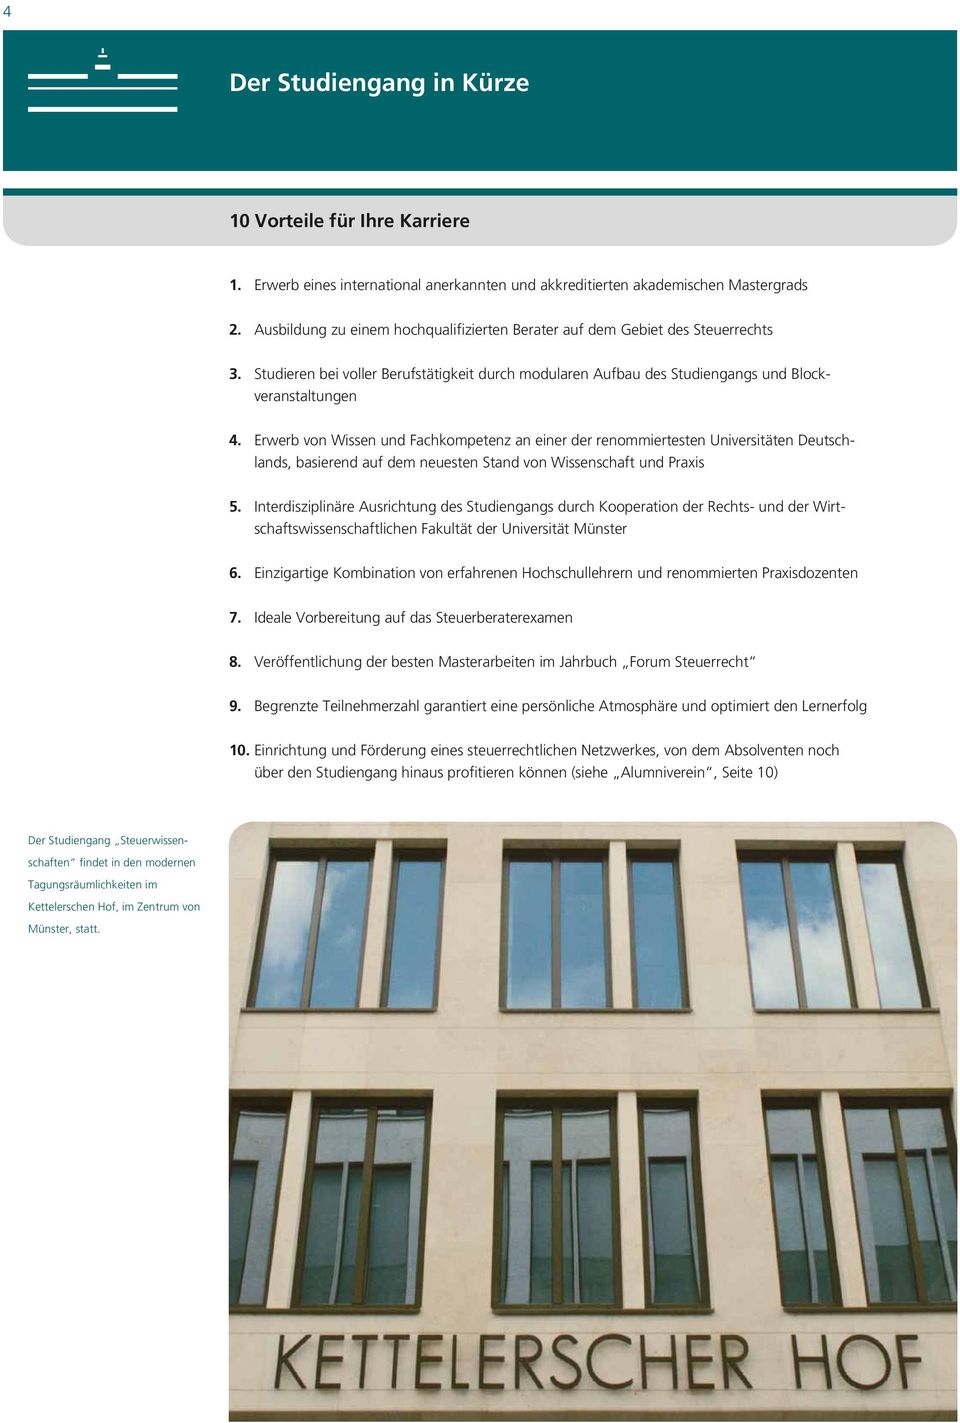 Erwerb von Wissen und Fachkompetenz an einer der renommiertesten Universitäten Deutschlands, basierend auf dem neuesten Stand von Wissenschaft und Praxis 5.